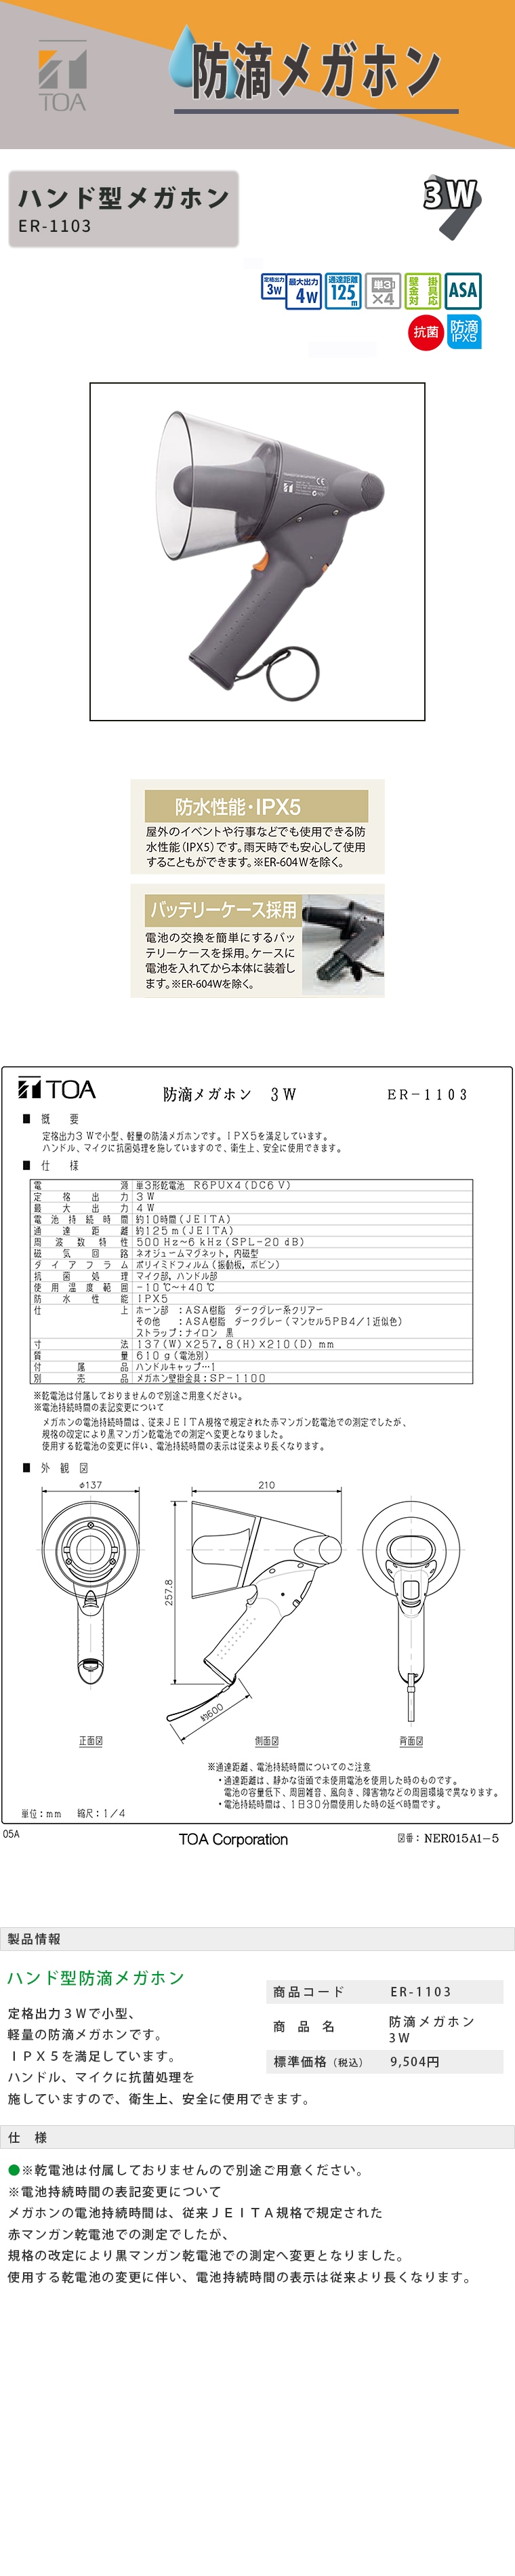 安価 TOA 小型防滴メガホン 3W ER-1103 | www.takalamtech.com